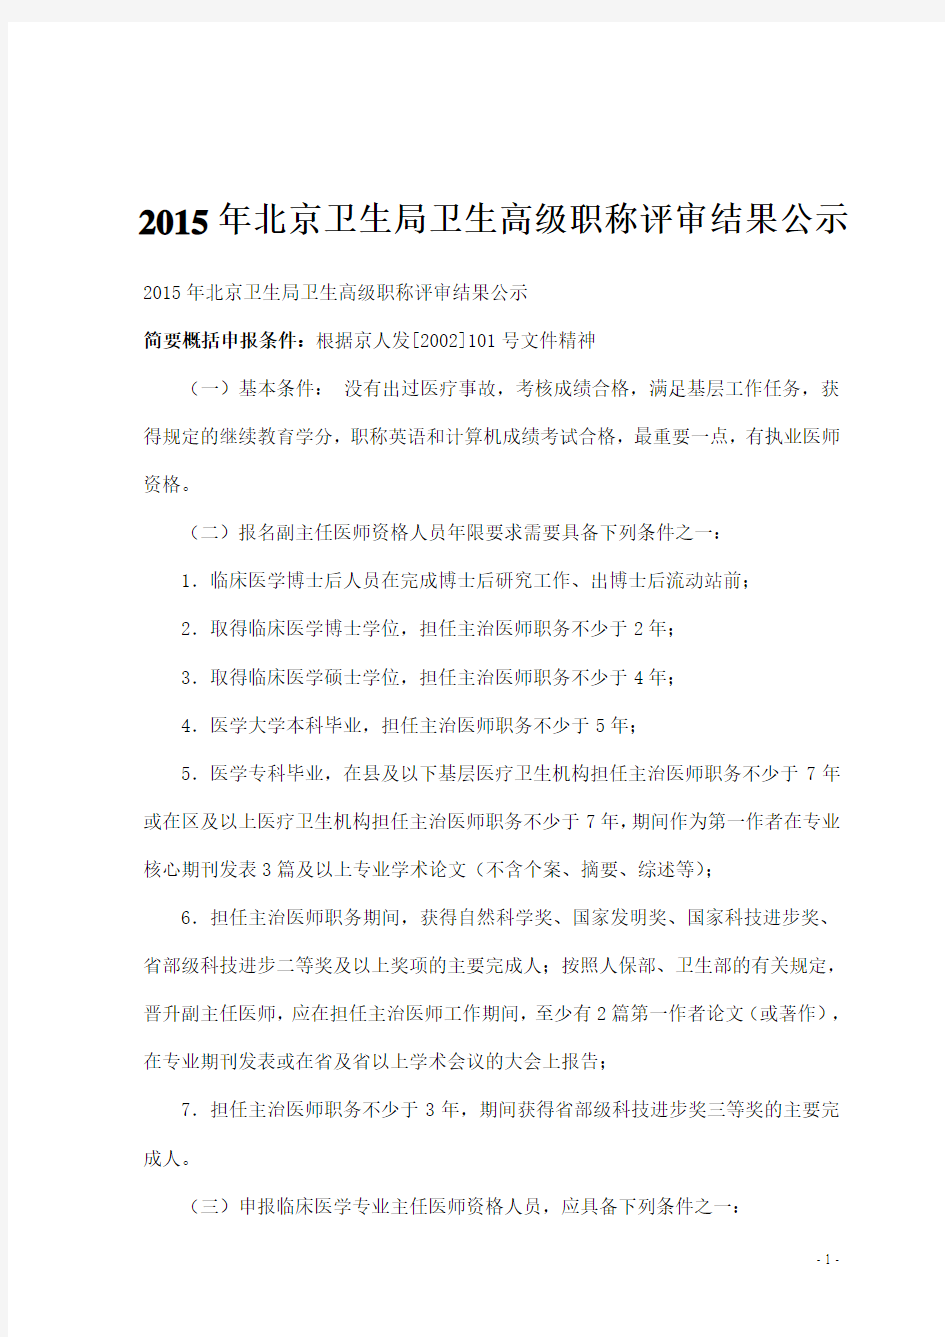 2015年北京卫生局卫生高级职称评审结果公示